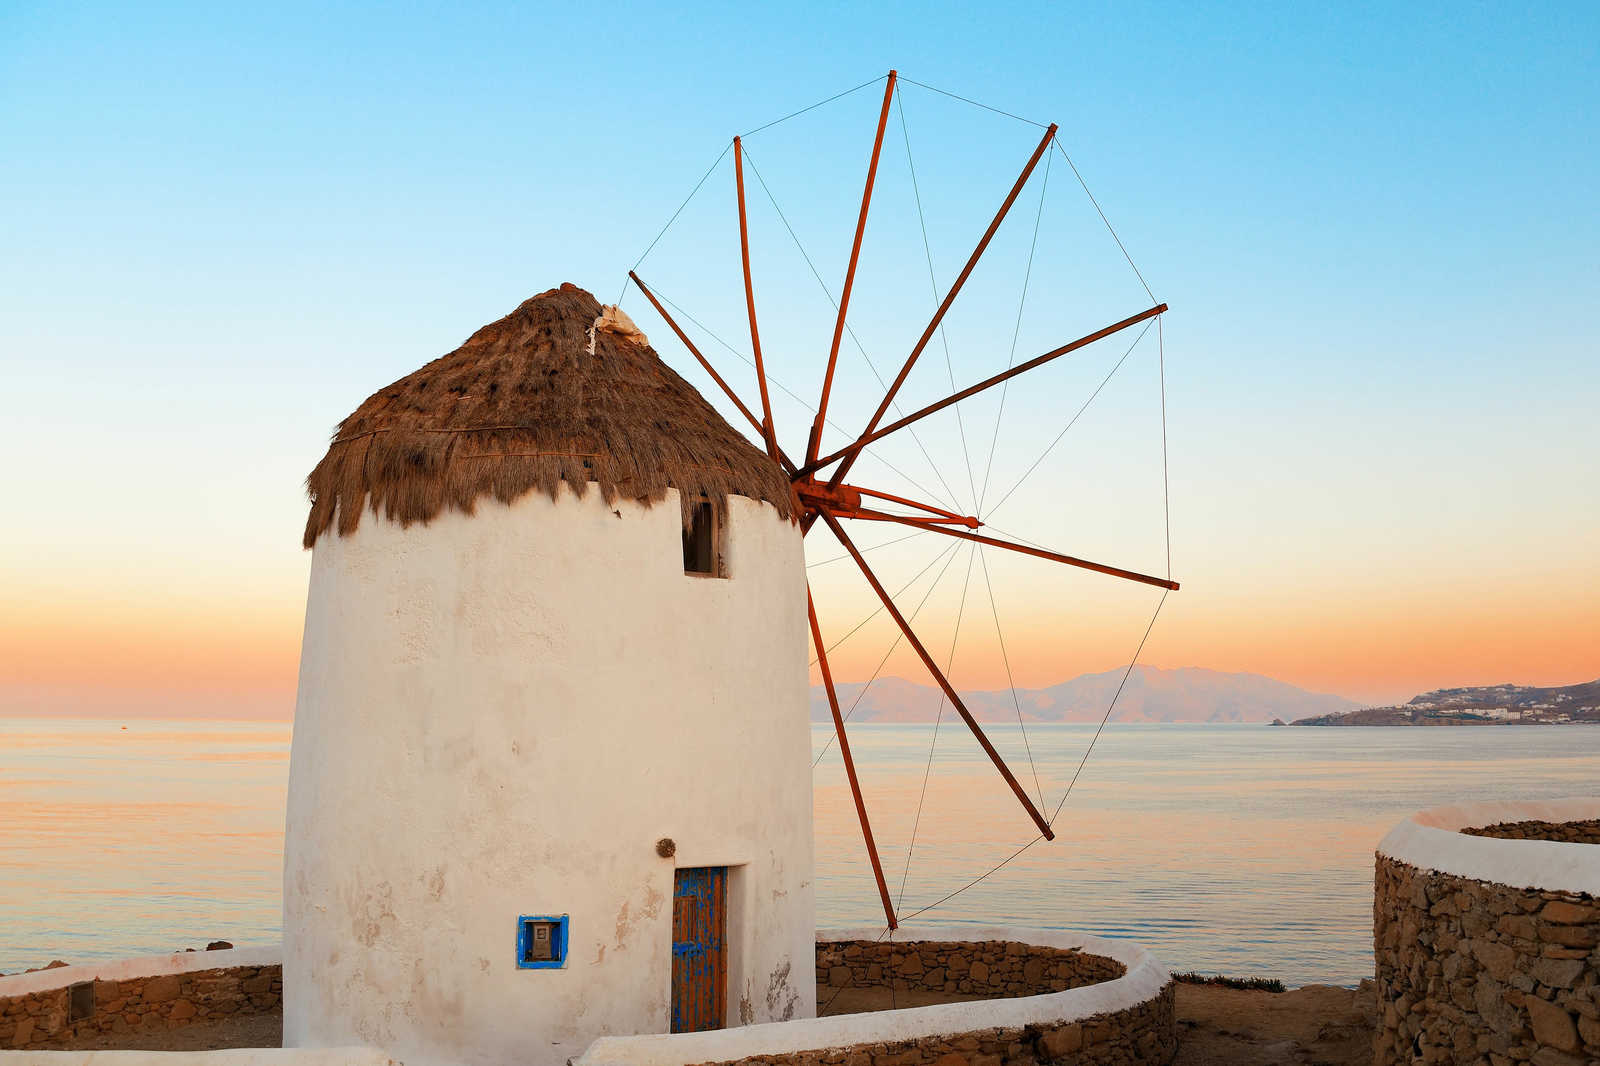             Quadro su tela Mulino a vento greco sulla costa - 0,90 m x 0,60 m
        